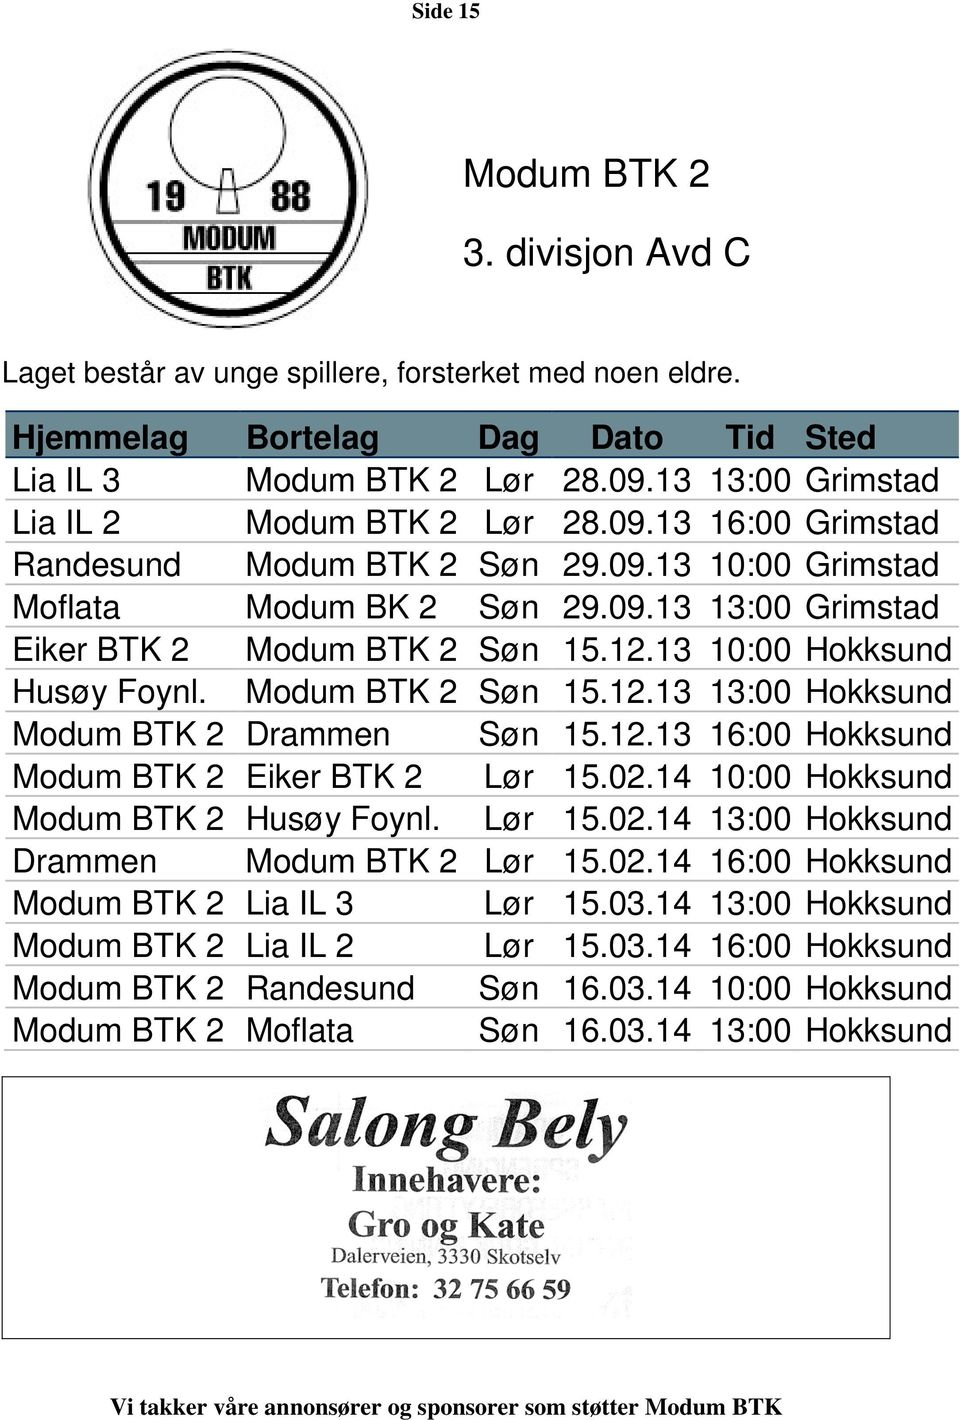 13 10:00 Hokksund Husøy Foynl. Modum BTK 2 Søn 15.12.13 13:00 Hokksund Modum BTK 2 Drammen Søn 15.12.13 16:00 Hokksund Modum BTK 2 Eiker BTK 2 Lør 15.02.14 10:00 Hokksund Modum BTK 2 Husøy Foynl.